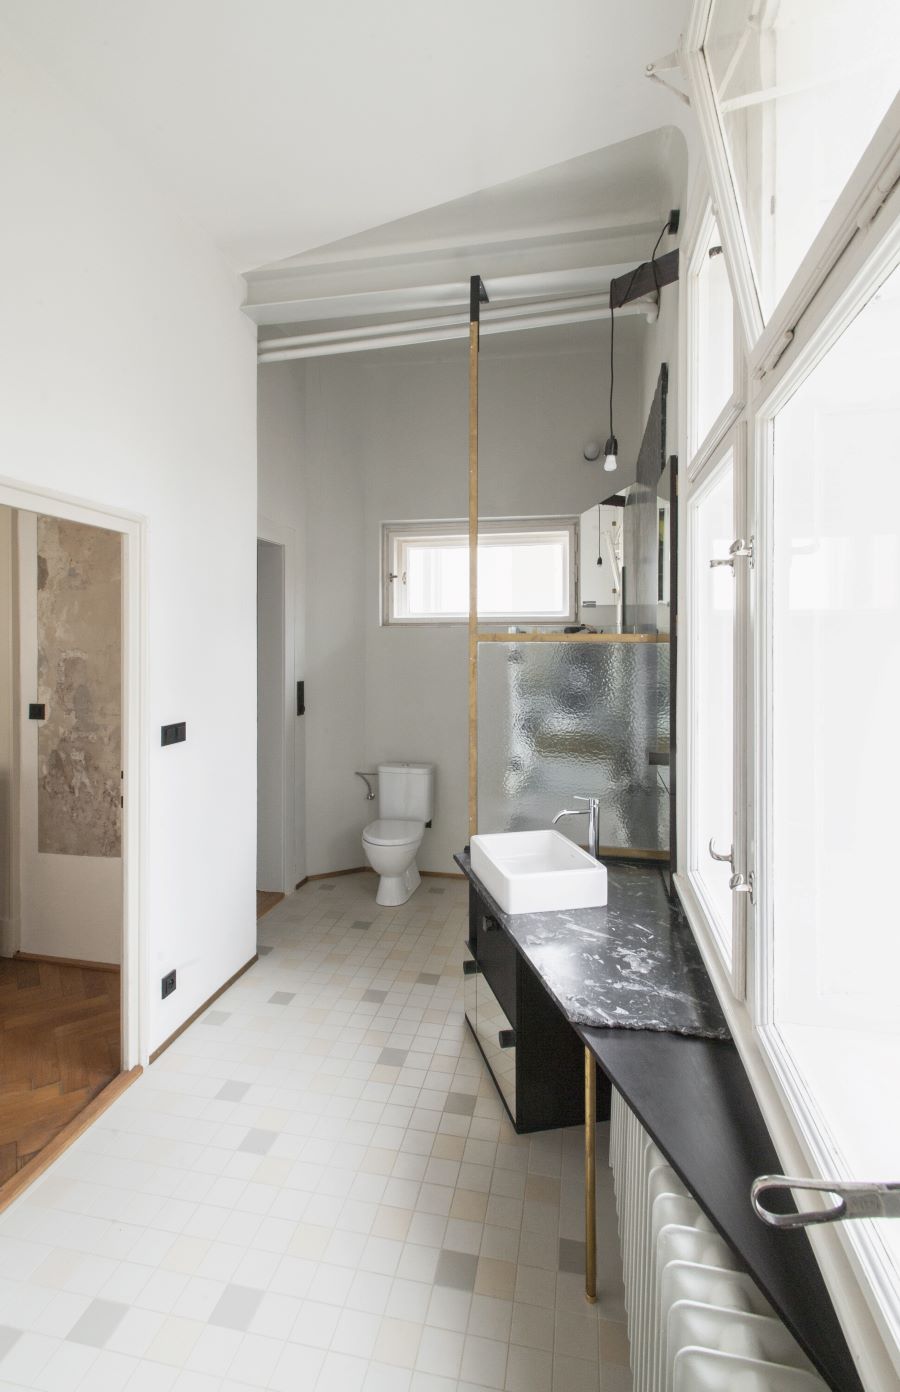 Kúpeľňa v byte, ladená do čierno-biela, s toaletou a asymetricky umiestneným umývadlom pod oknom.